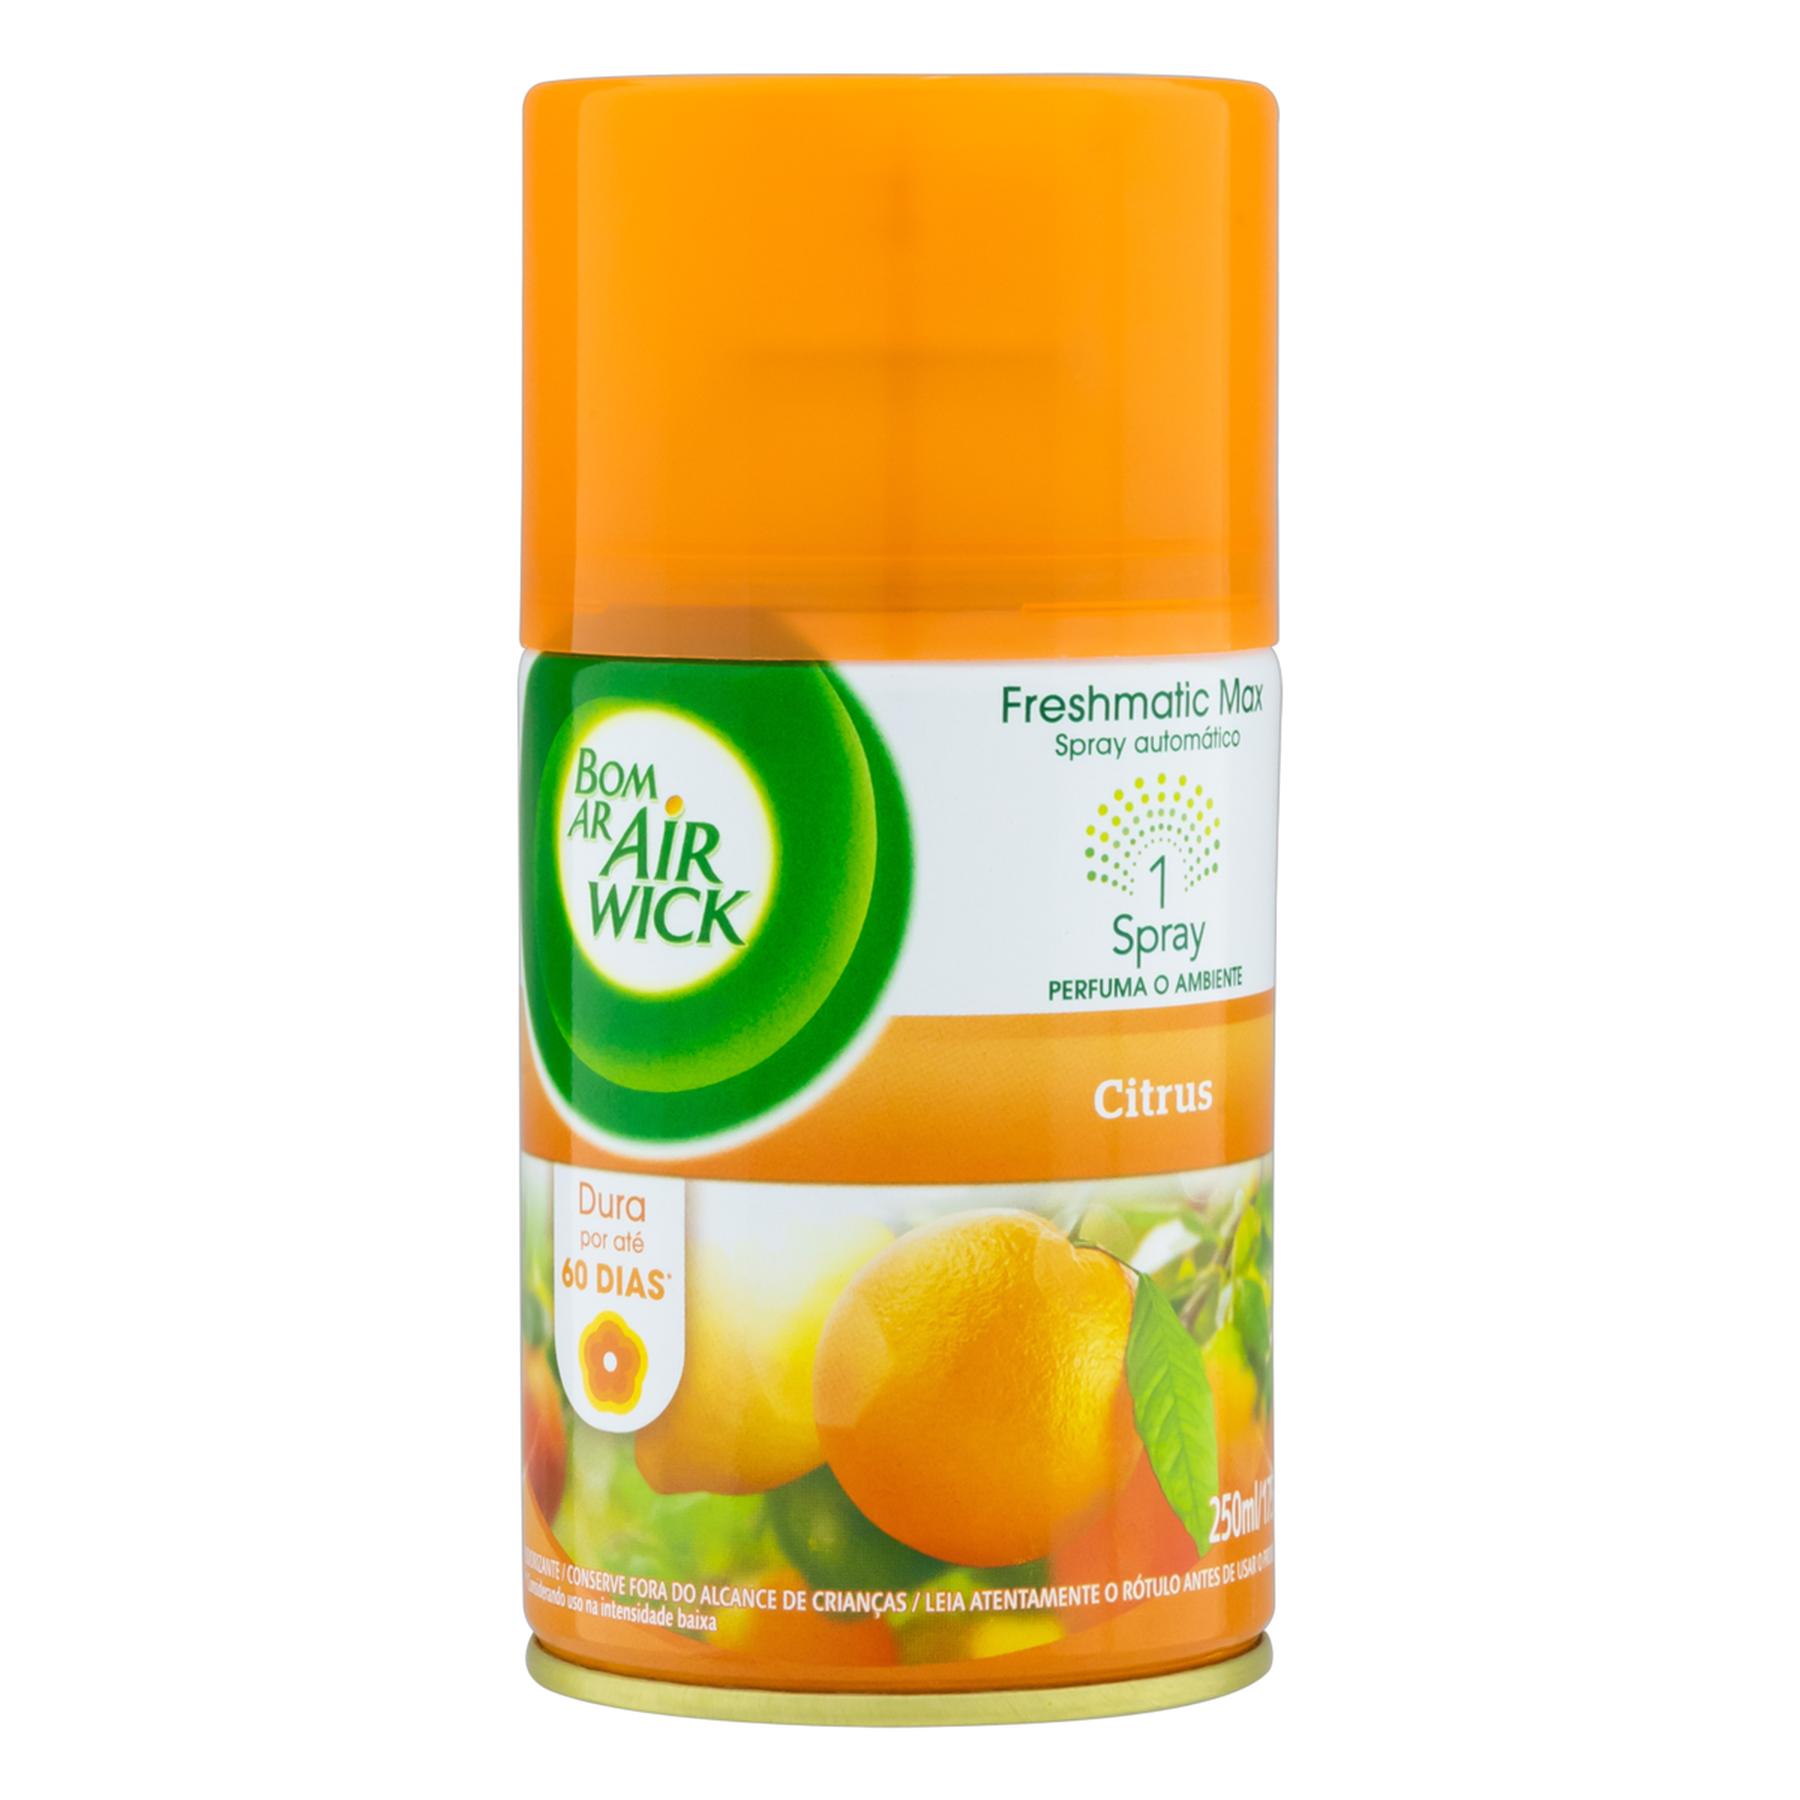 Odorizador de Ambiente Automático Citrus Freshmatic Max Air Wick Bom Ar Frasco 250ml Refil